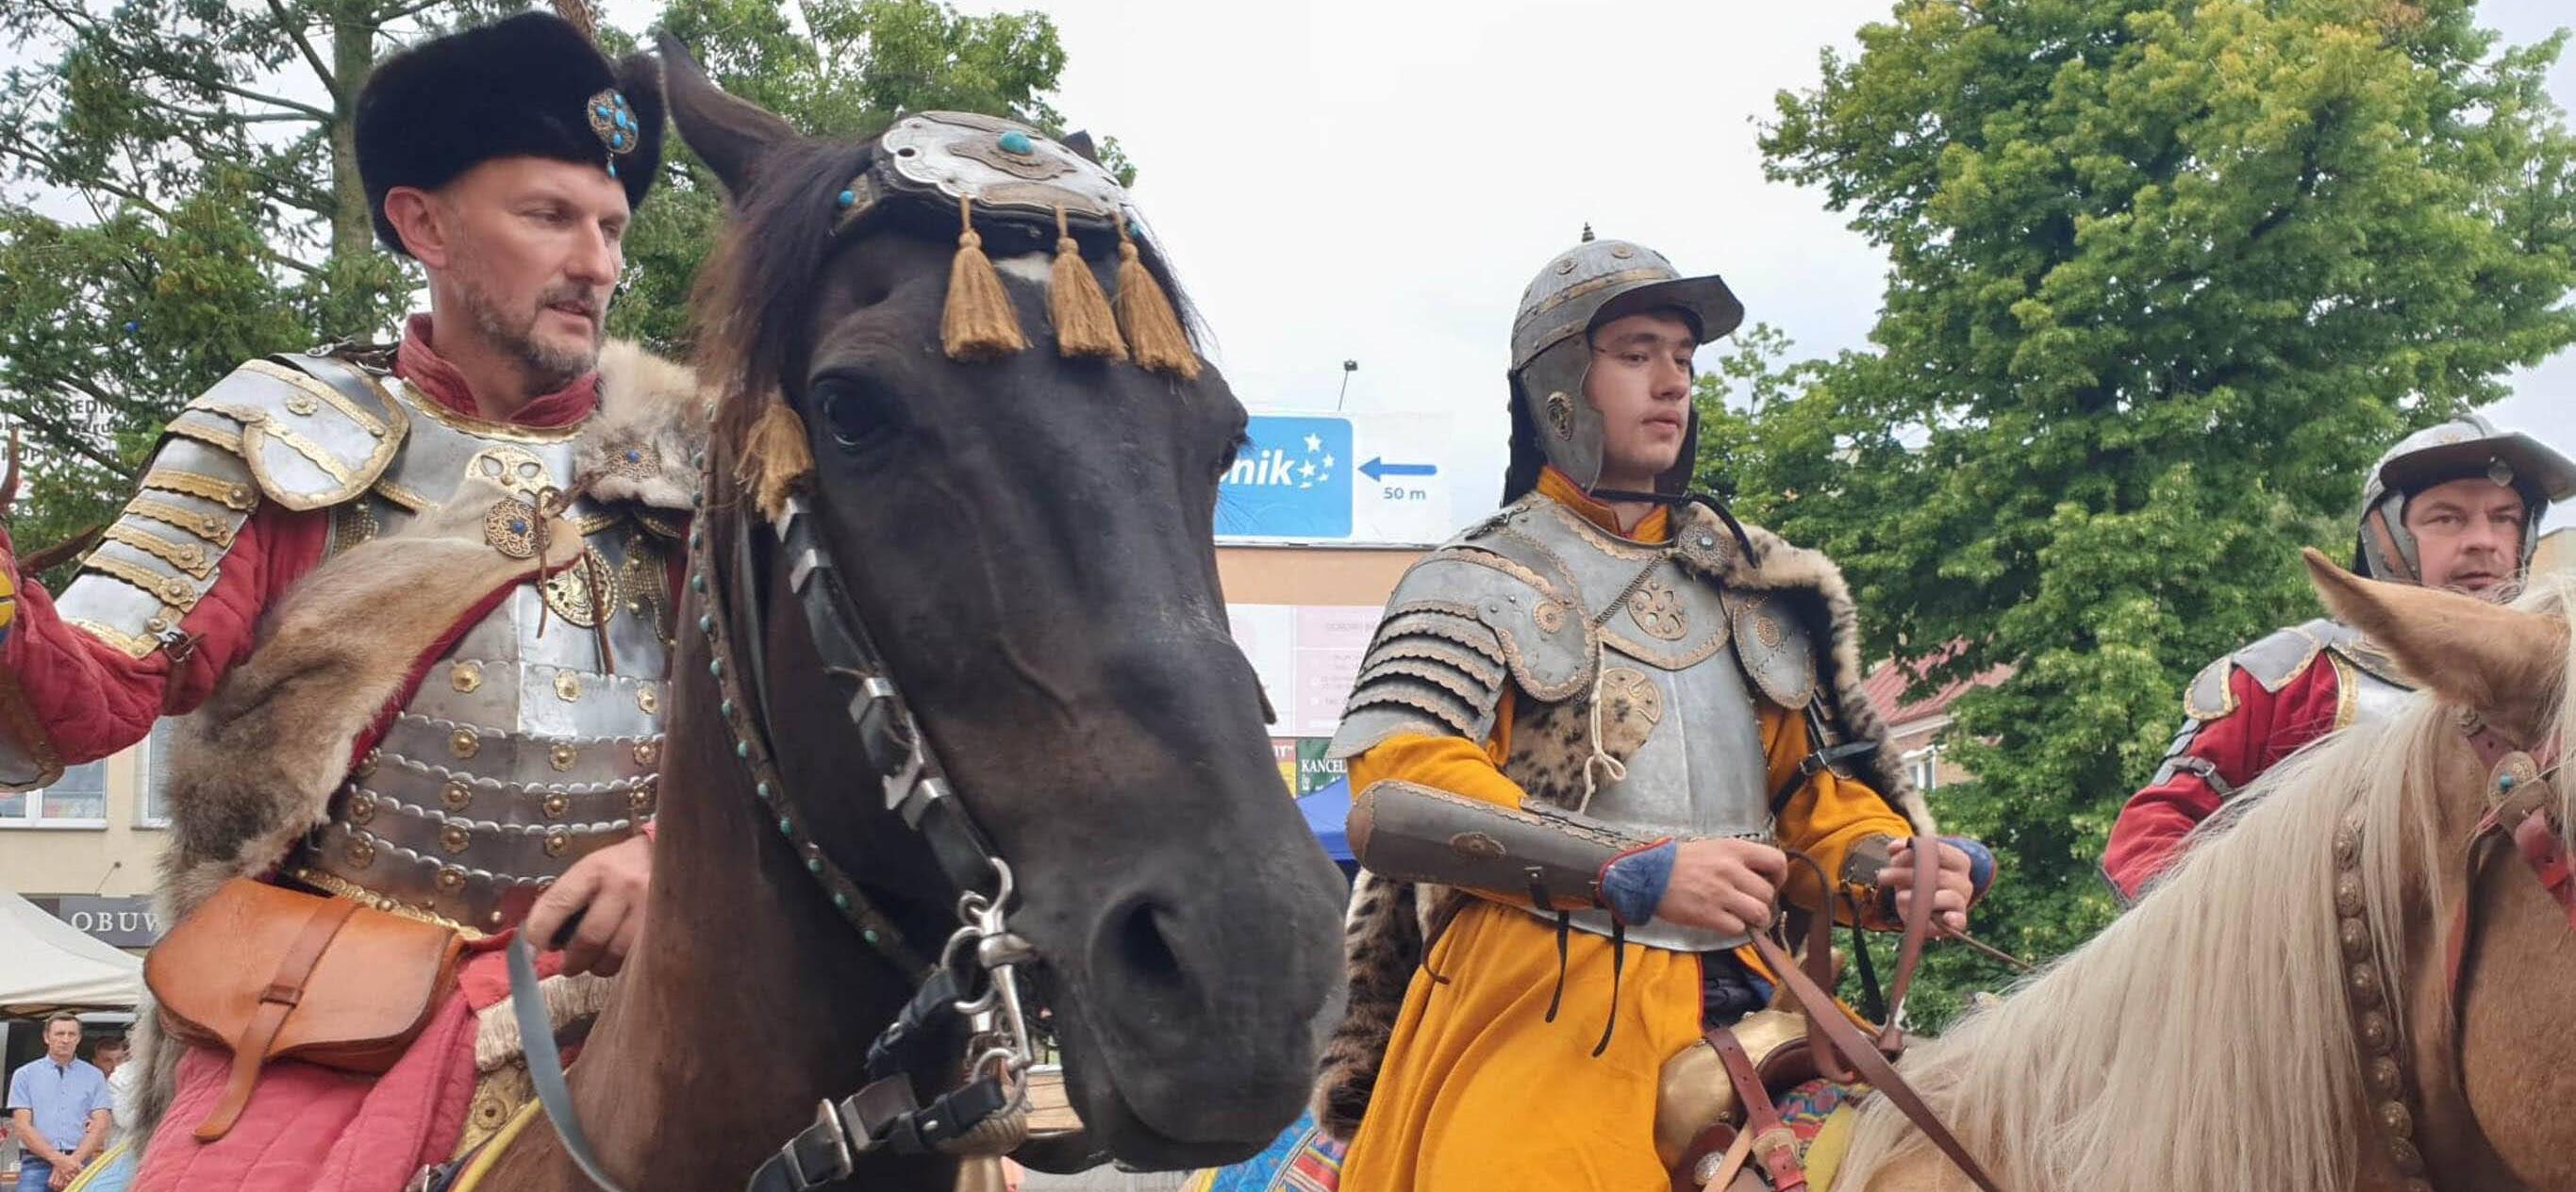 dwóch mężczyzn w historycznych strojach siedzą na koniach